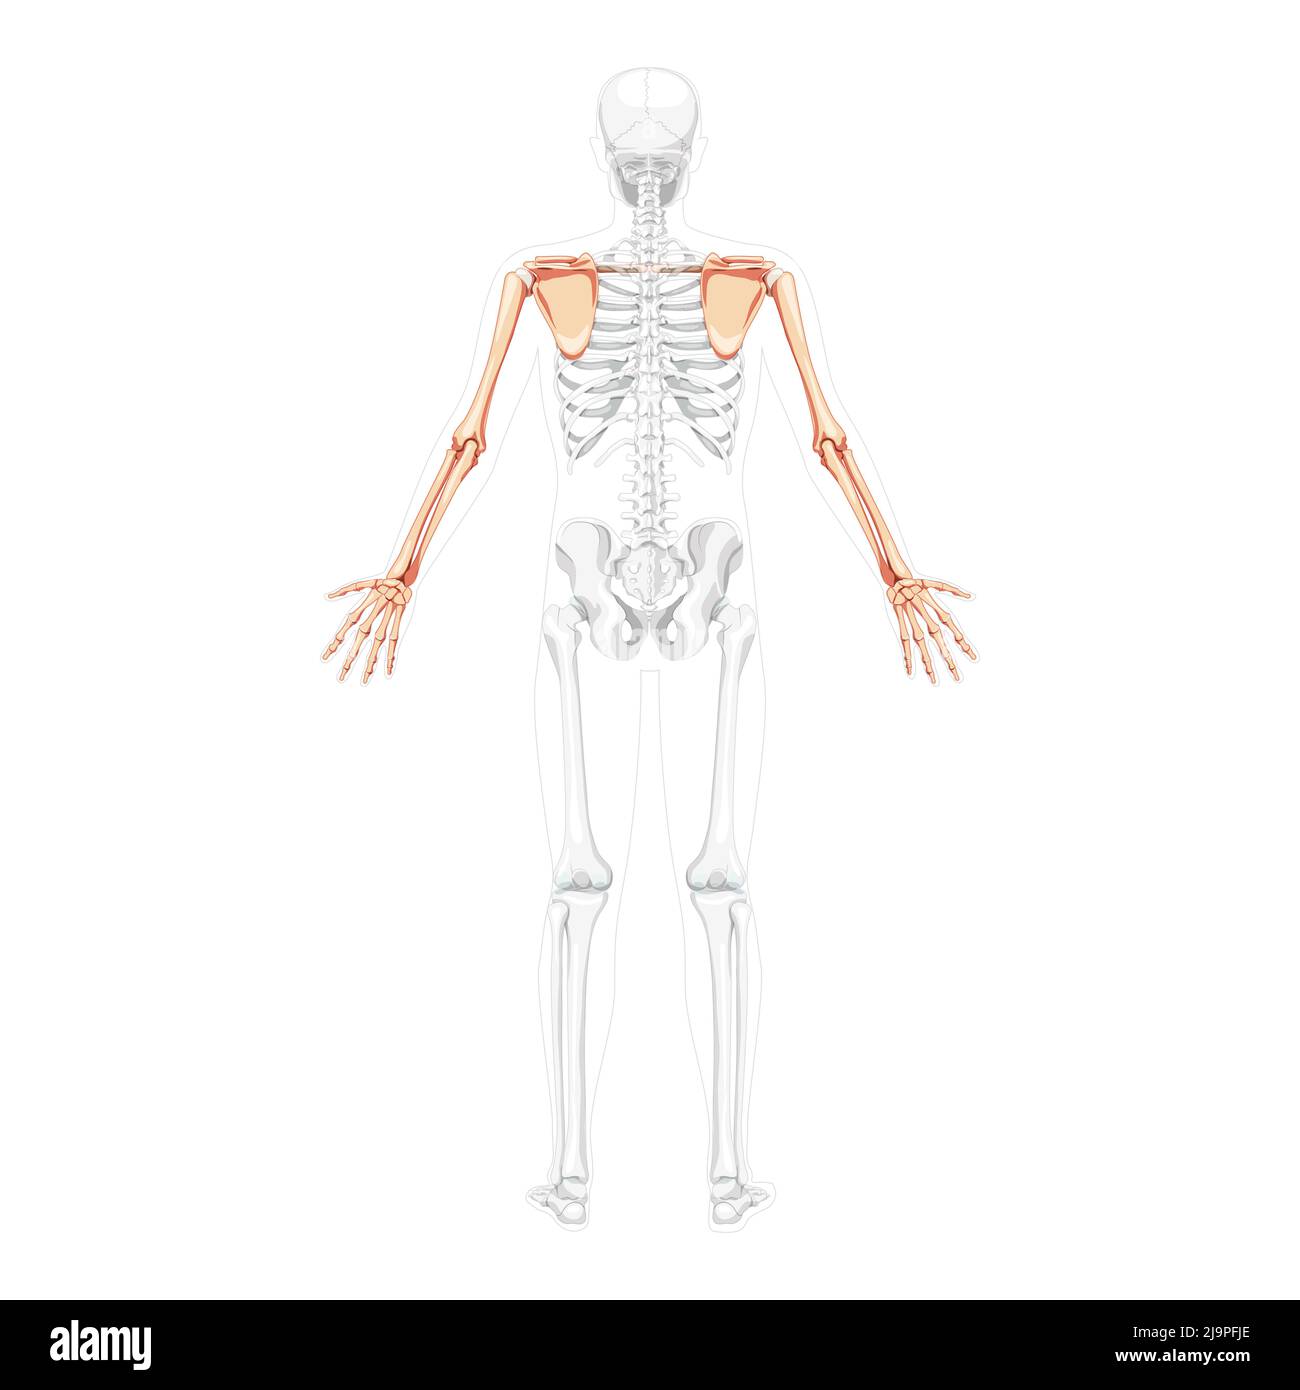 Skelett obere Extremität Arme mit Schultergurt menschliche Rückenansicht mit zwei Armhaltungen mit teilweise transparenter Knochenposition. Schlüsselbein, Schulterblatt, Unterarme realistisches flaches Konzept Vektordarstellung Anatomie Stock Vektor